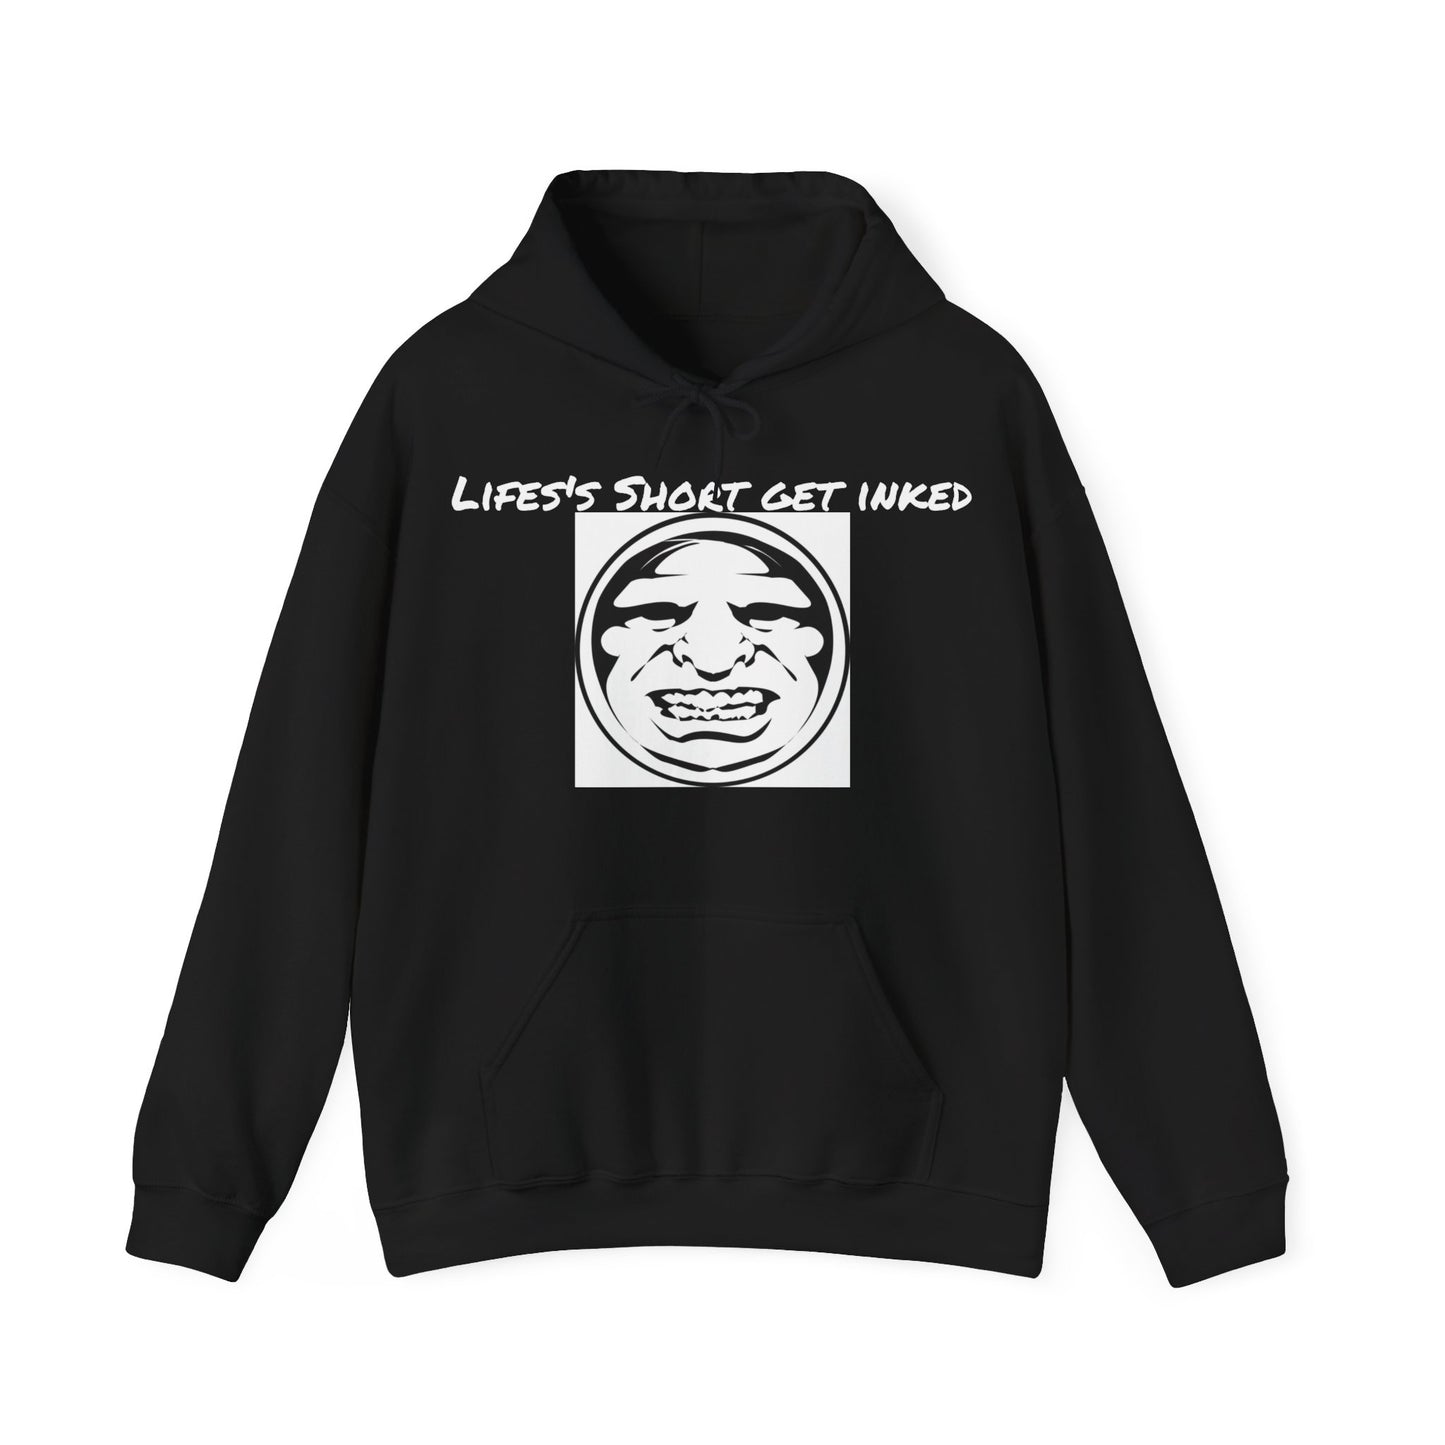 Lifes short get inked Hooded Sweatshirt